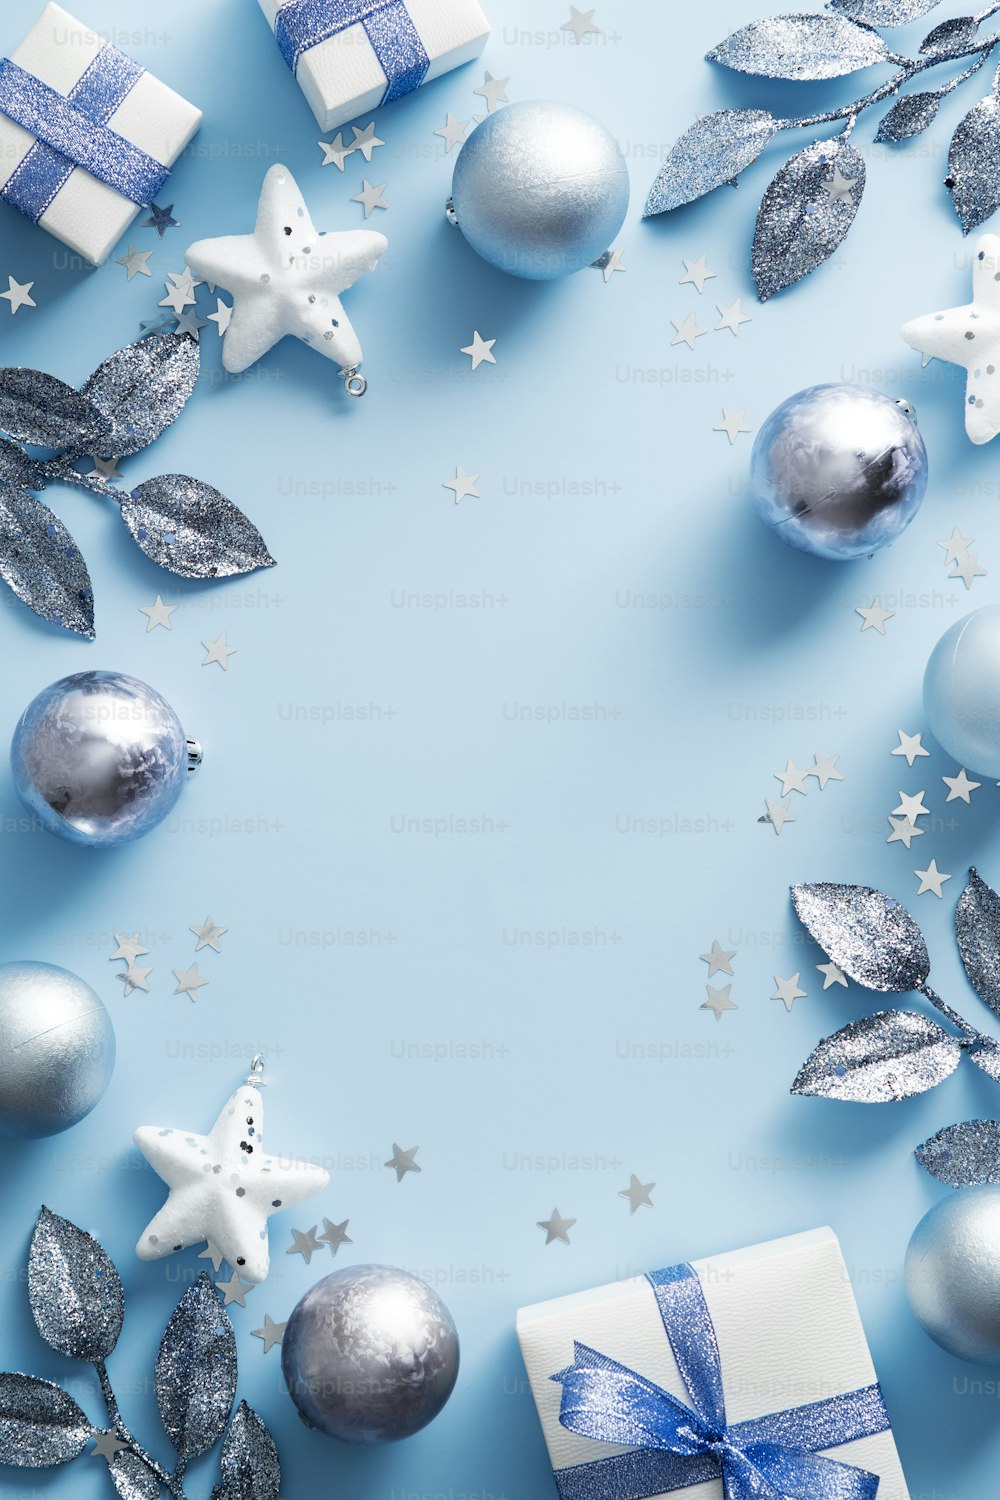 メリークリスマス縦型バナーデザイン。青い背景に銀と白のクリスマスの飾り。モダンなクリスマスポスターのモックアップ。